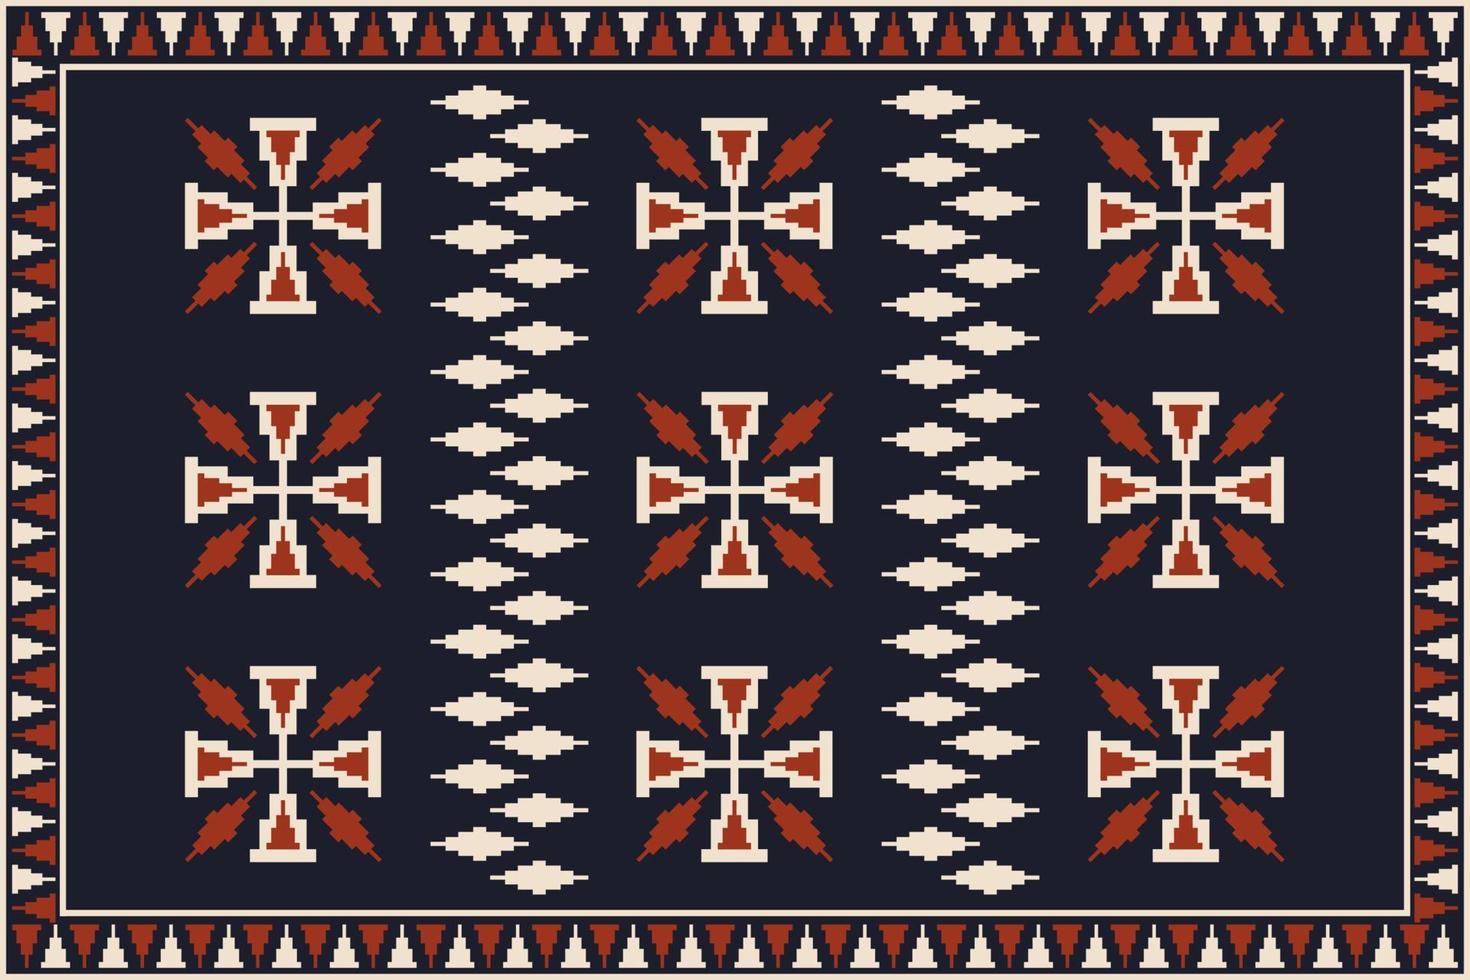 aztec zuidwesten tapijt patroon. aztec kilim meetkundig traditioneel patroon gebruik voor tapijt, Oppervlakte tapijt, mat, tapijtwerk. etnisch zuidwesten tapijt patroon gebruik voor huis decoratie elementen. vector